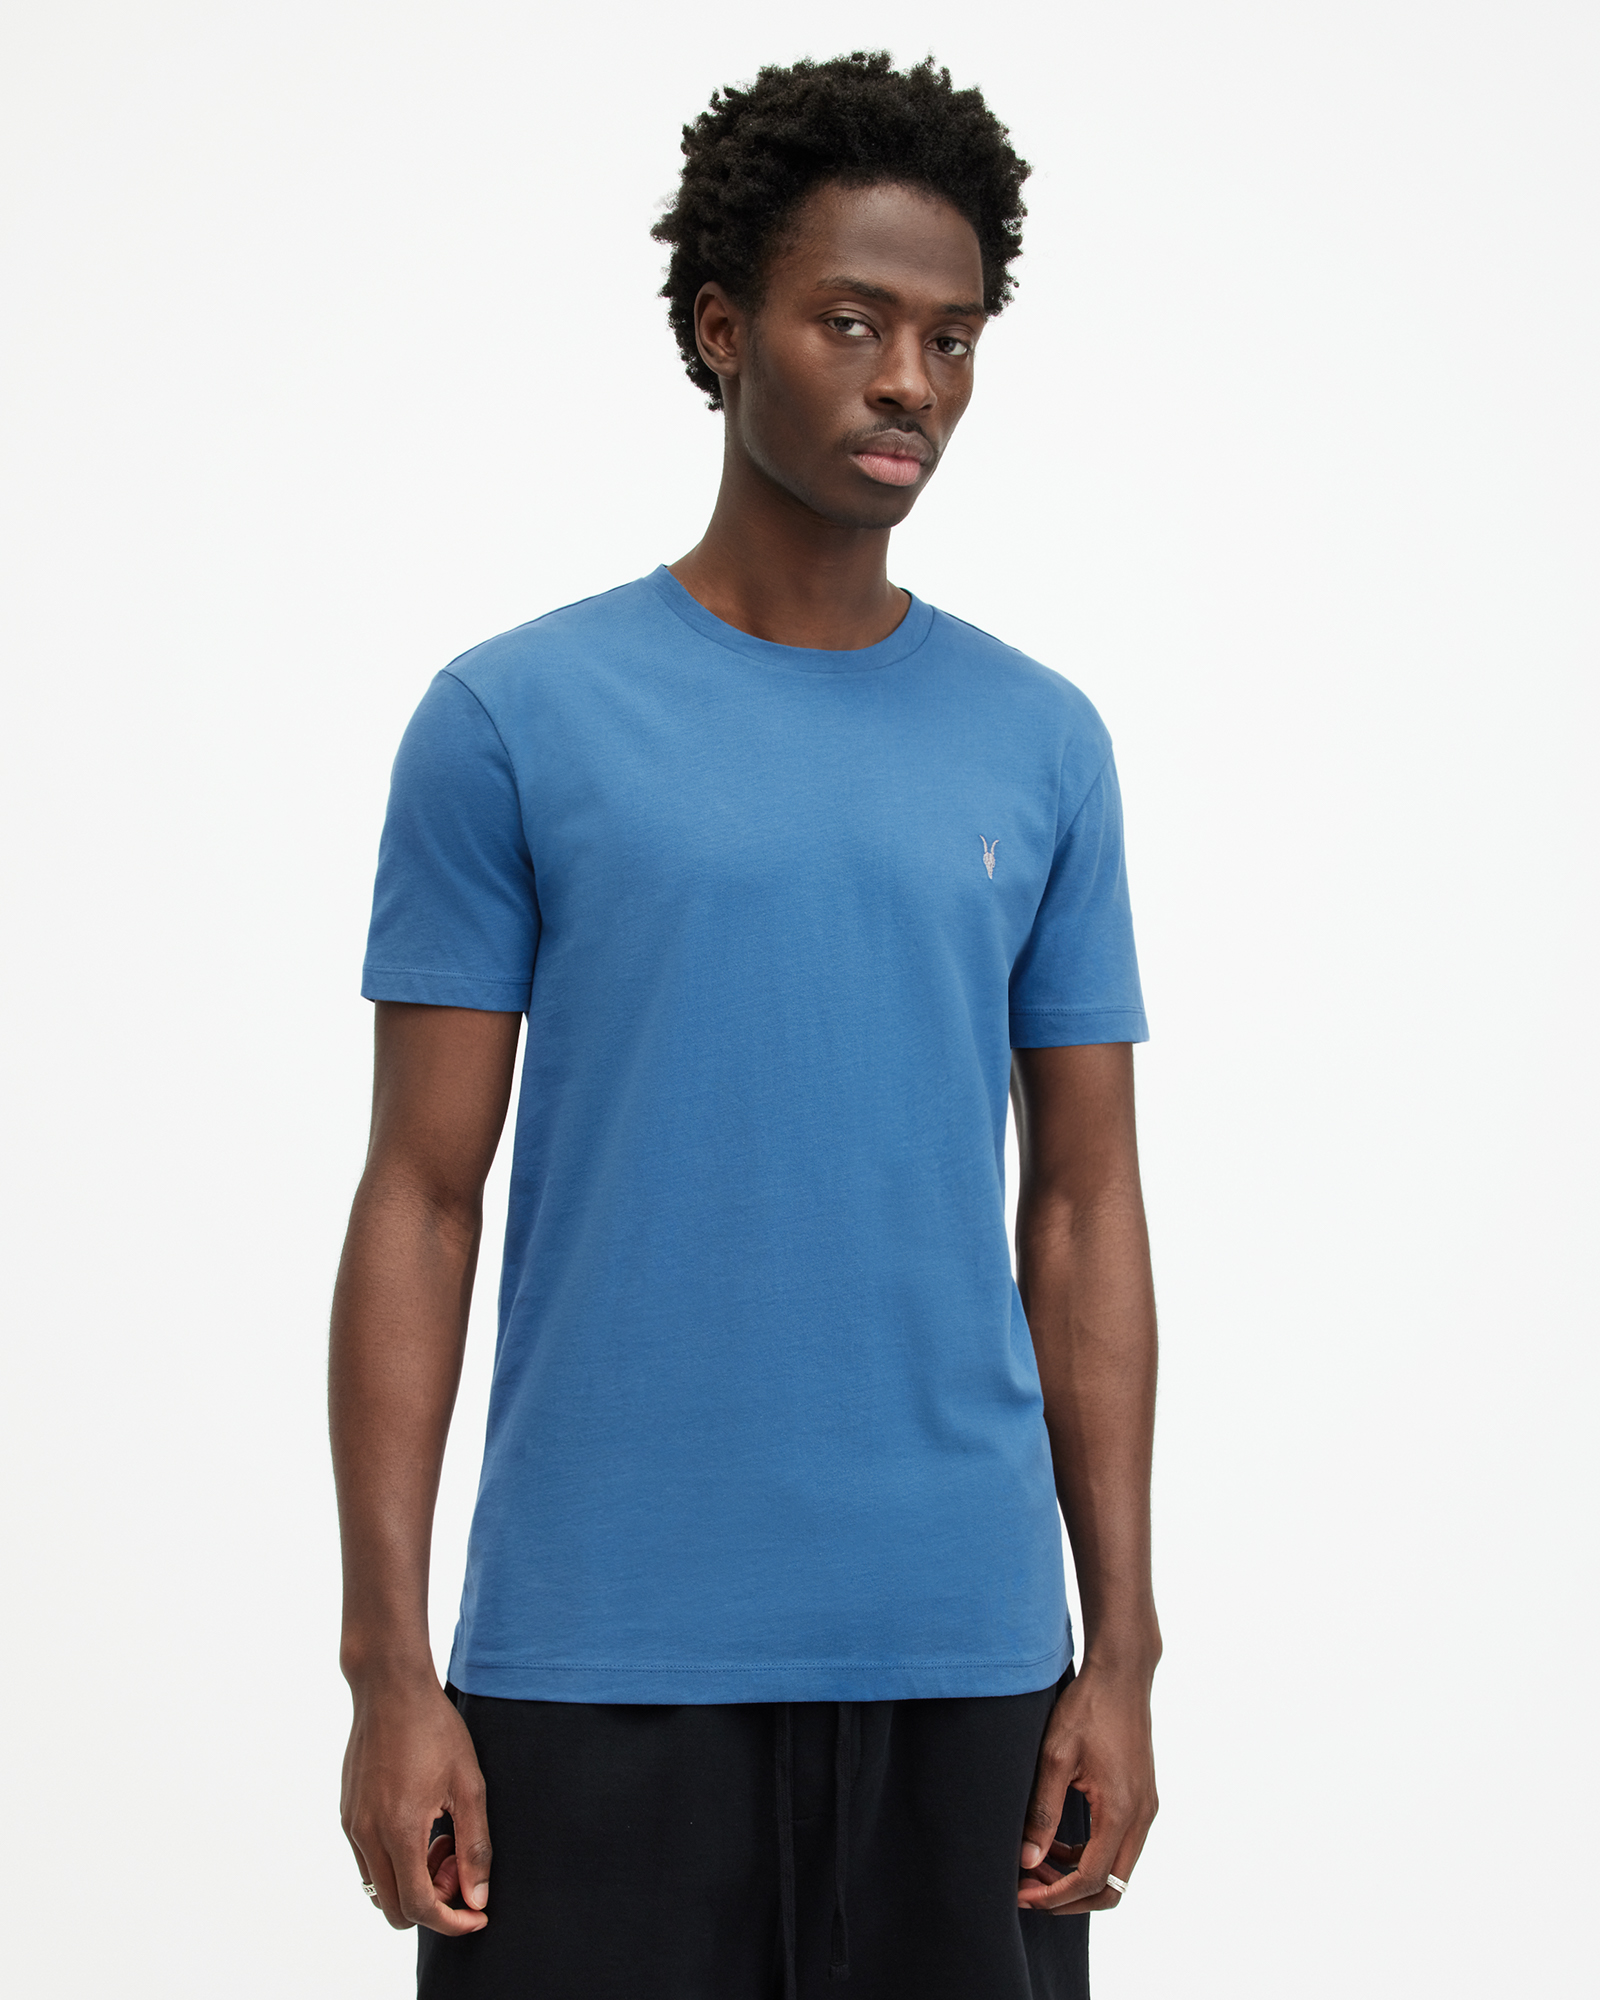 AllSaints Brace Brushed Cotton Crew Neck T-Shirt,, ATLANTIC BLUE